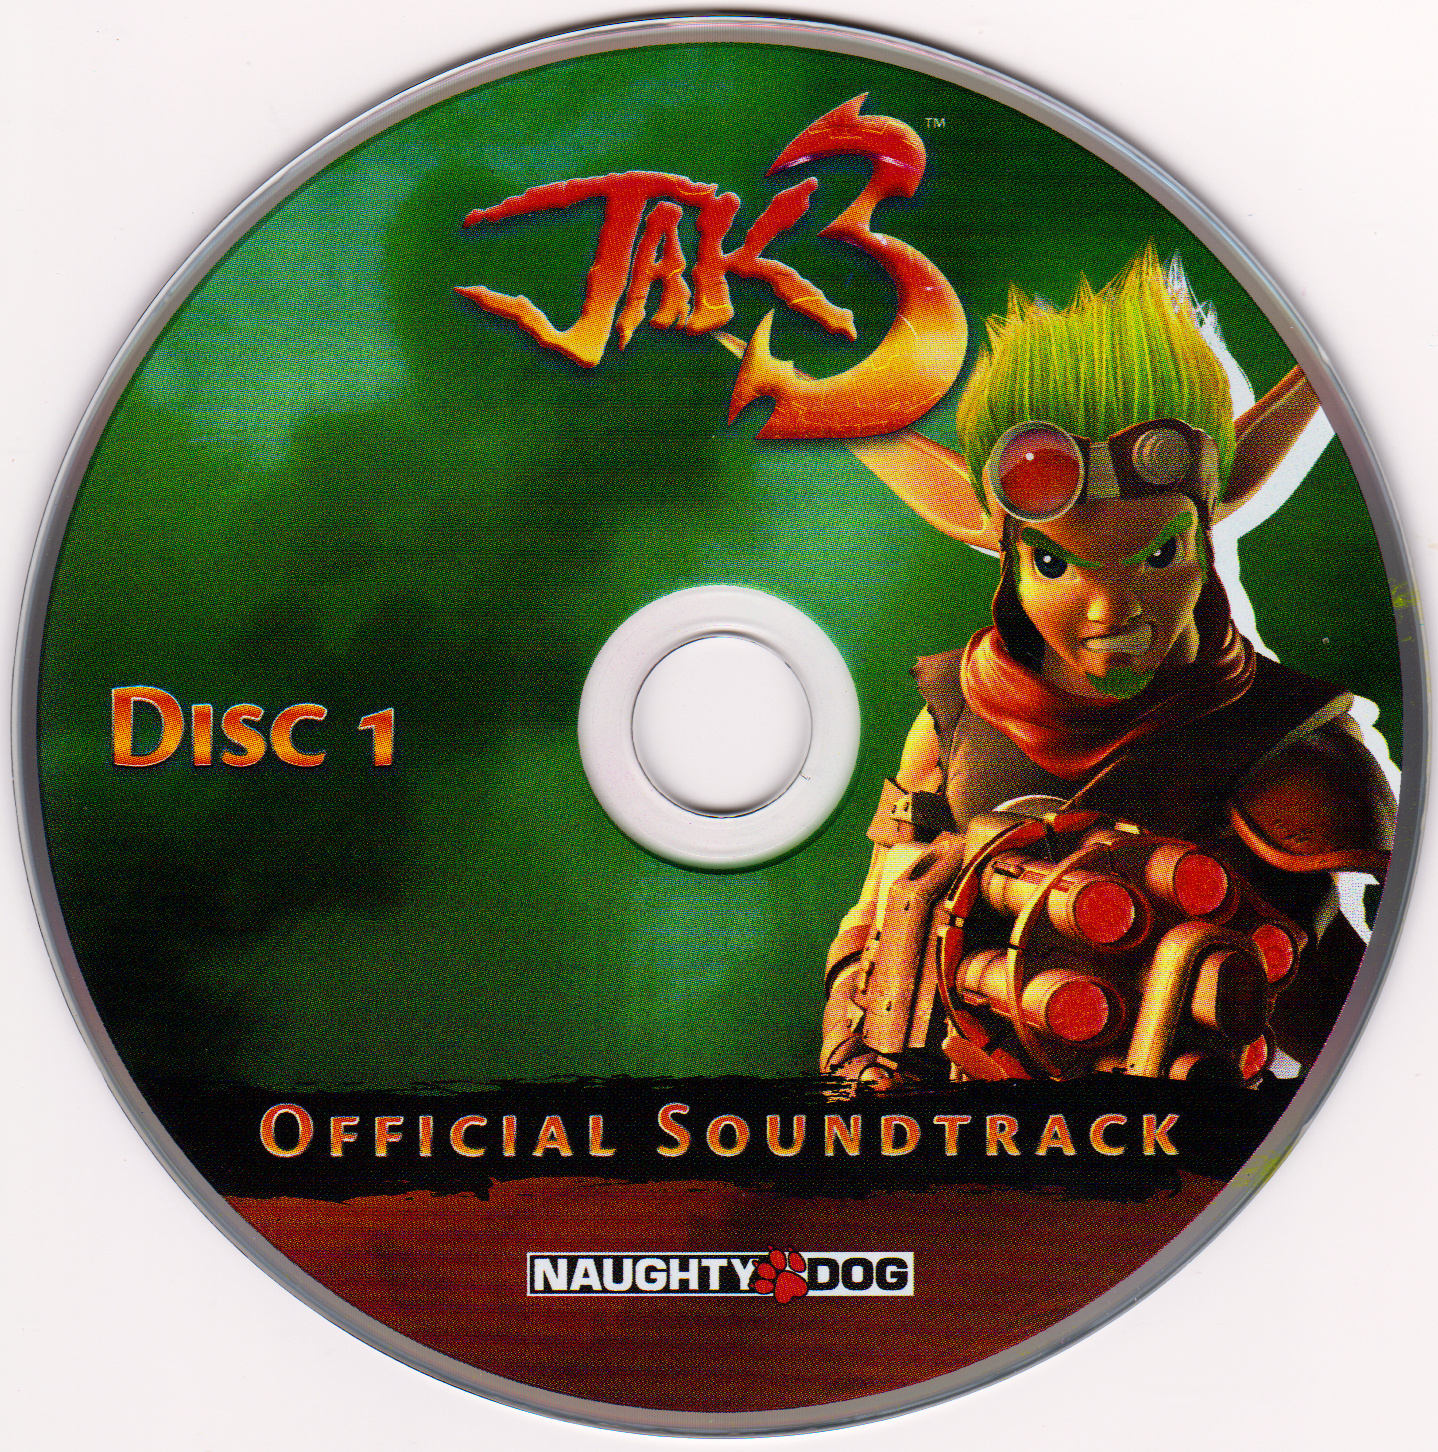 Spy hack official soundtrack download free utorrent